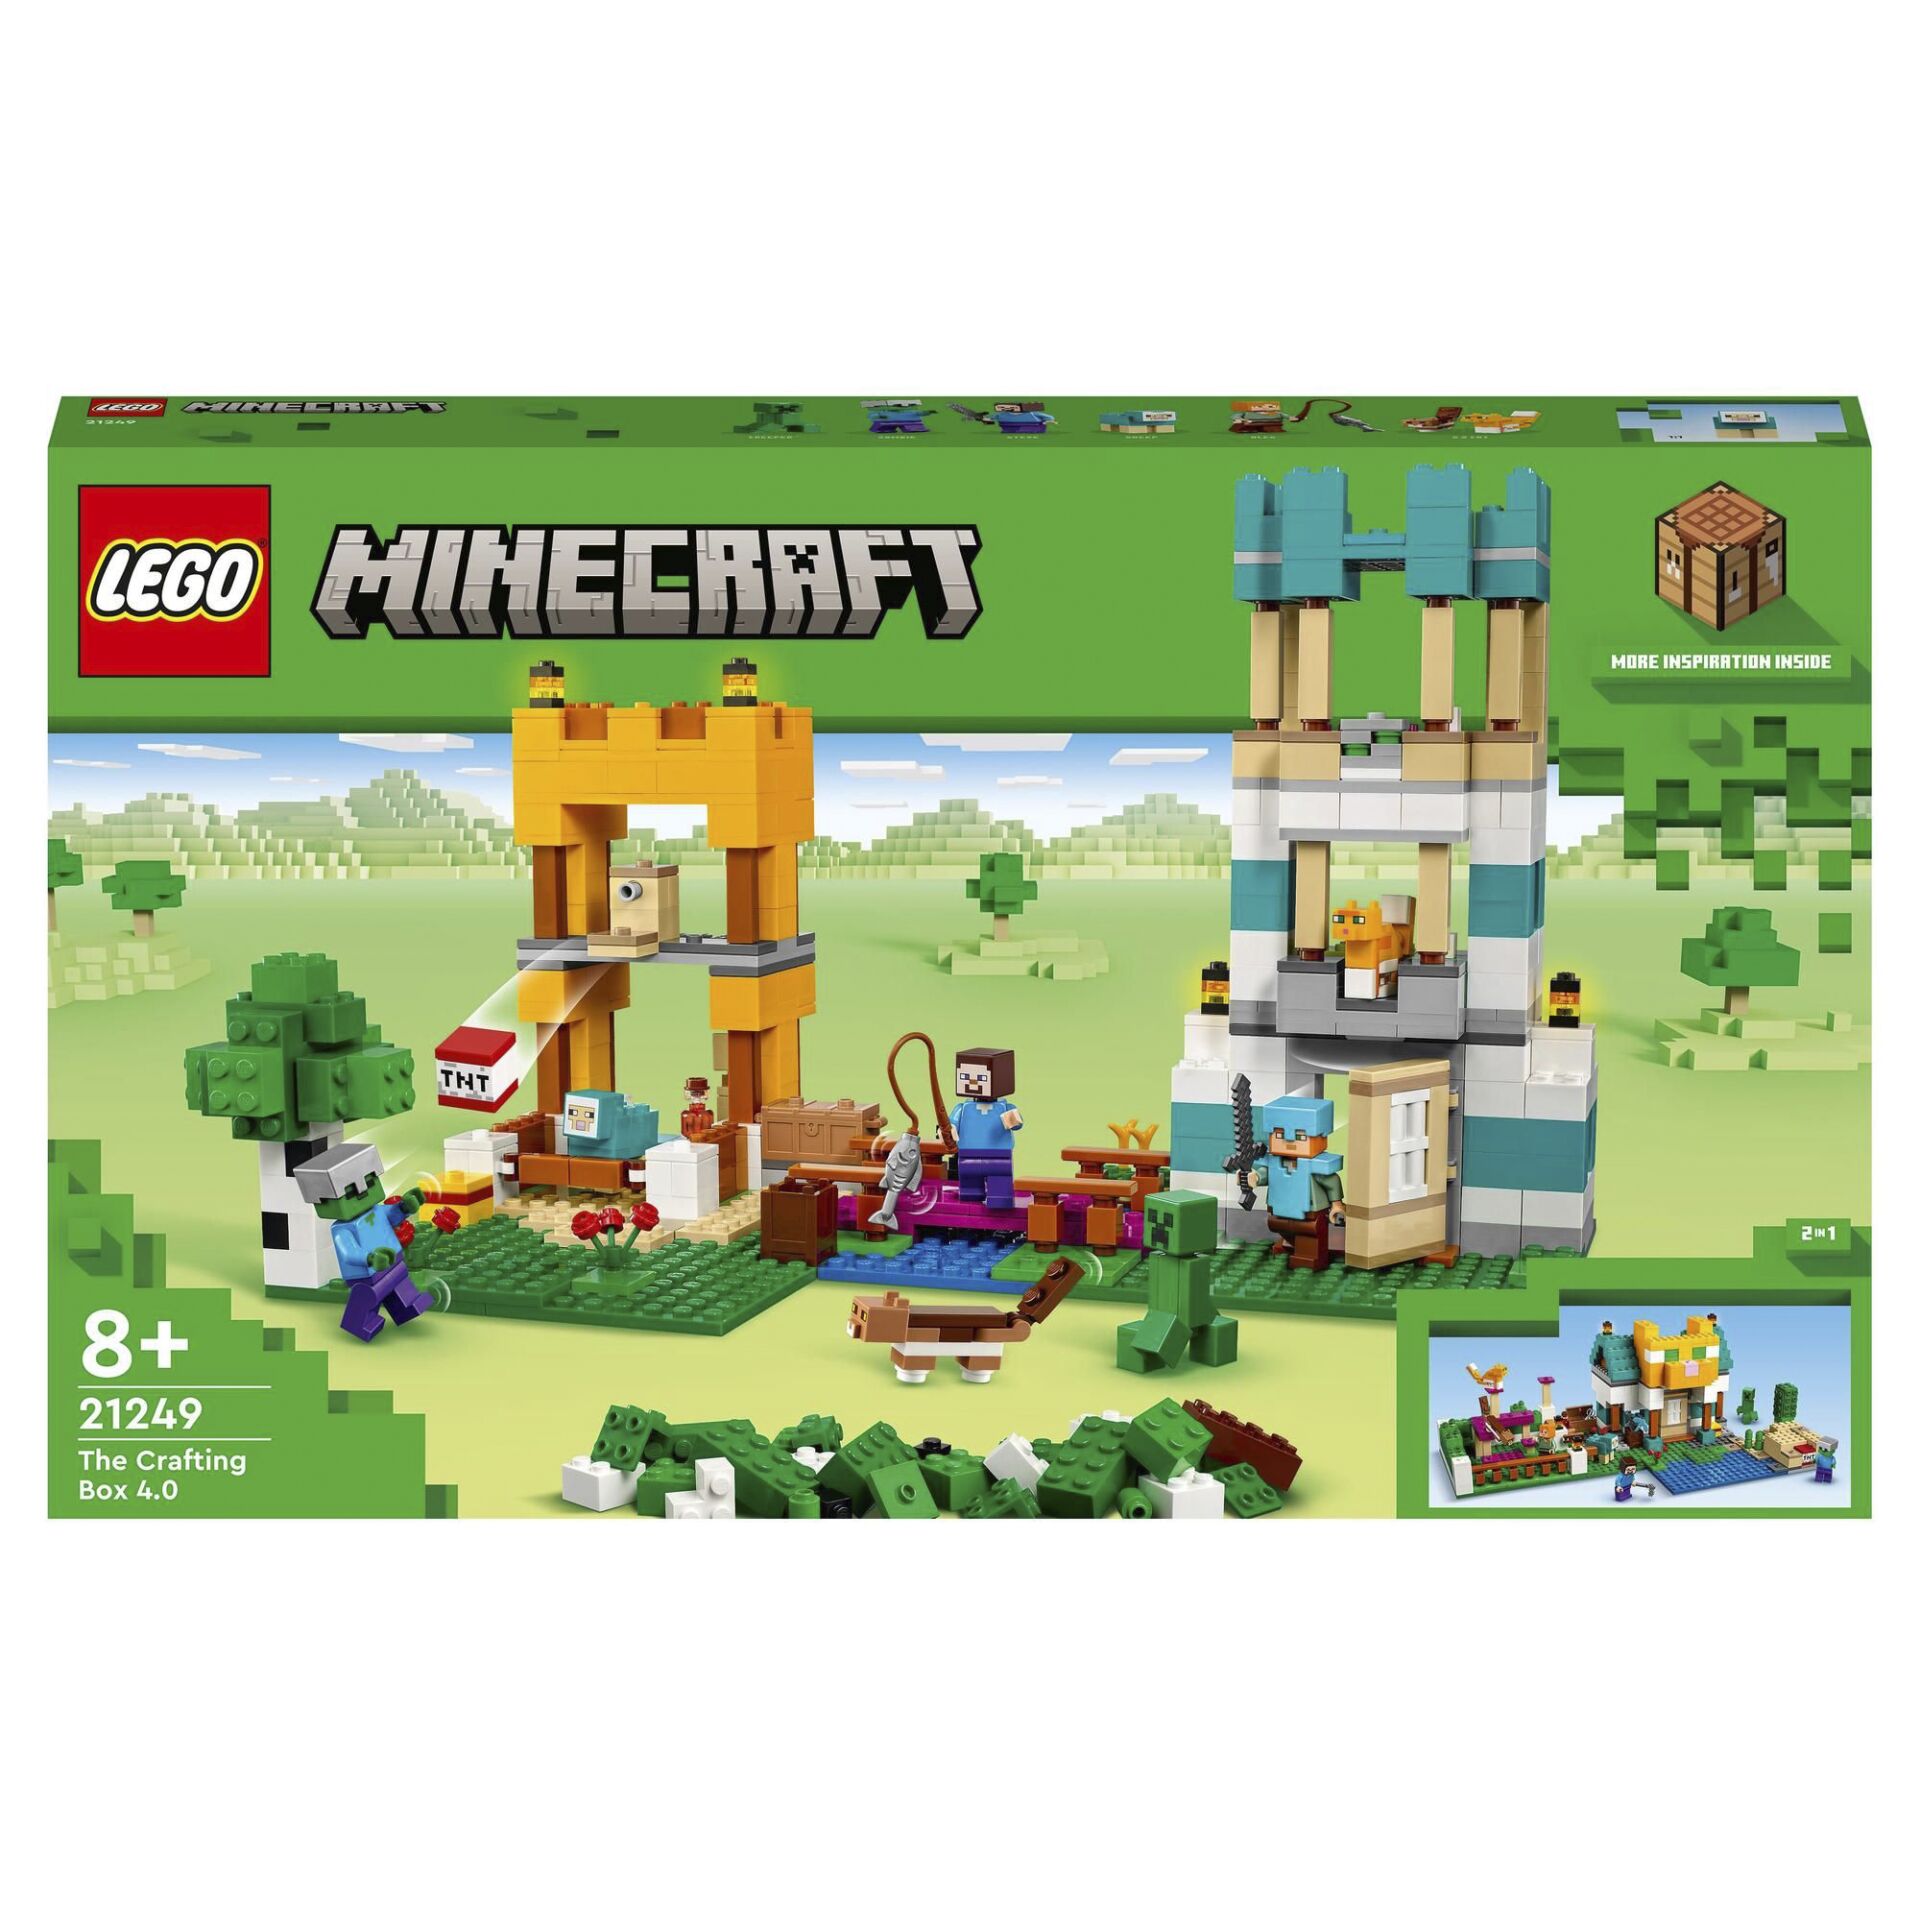 LEGO Minecraft 21249 Crafting Box 4.0